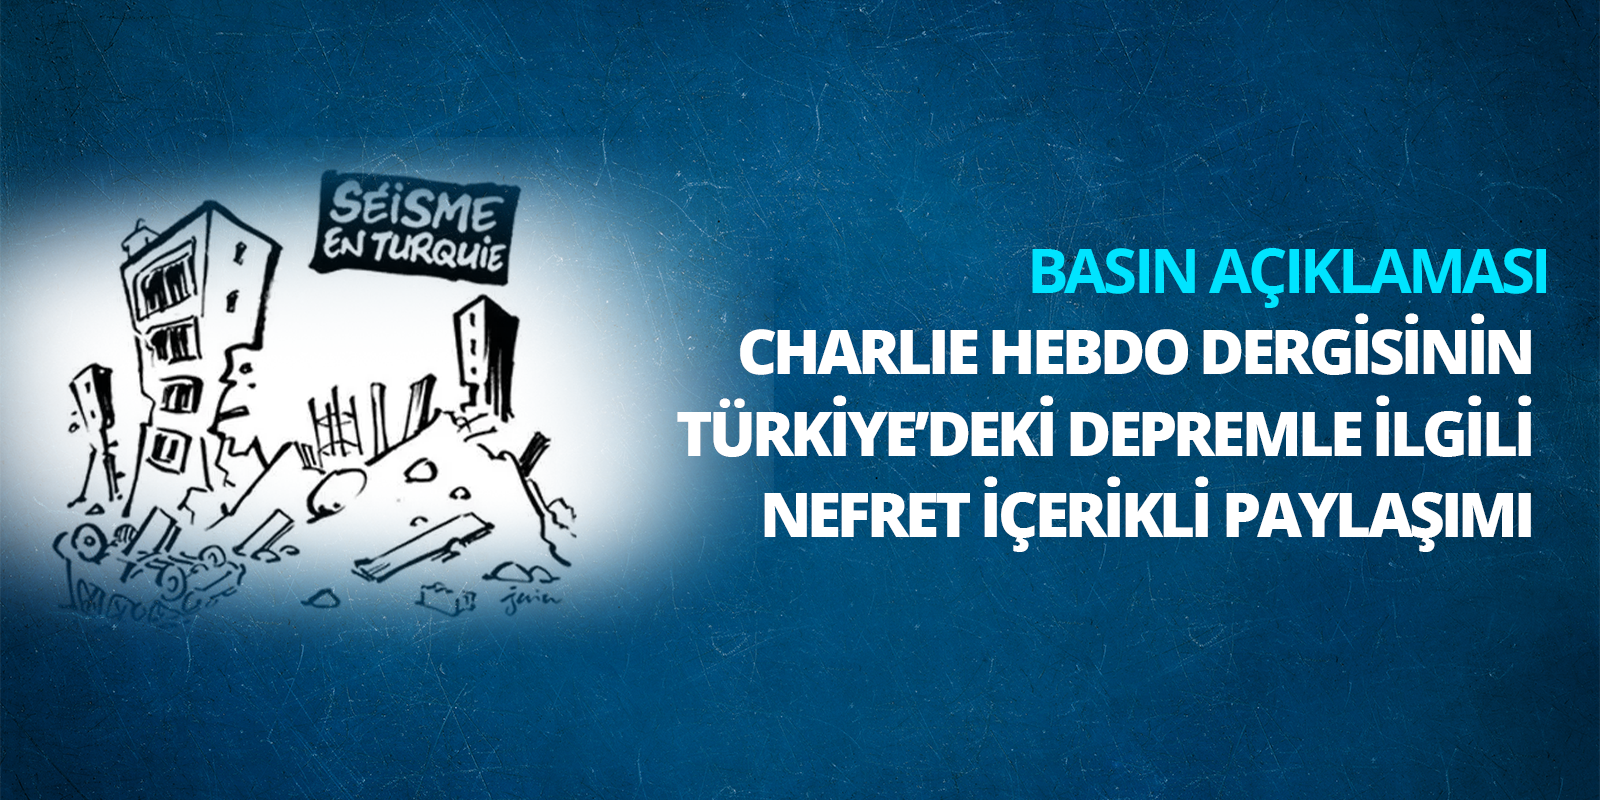 Charlie Hebdo Dergisinin Türkiye’deki Depremle İlgili Nefret İçerikli Paylaşımı Hakkında Basın Açıklaması